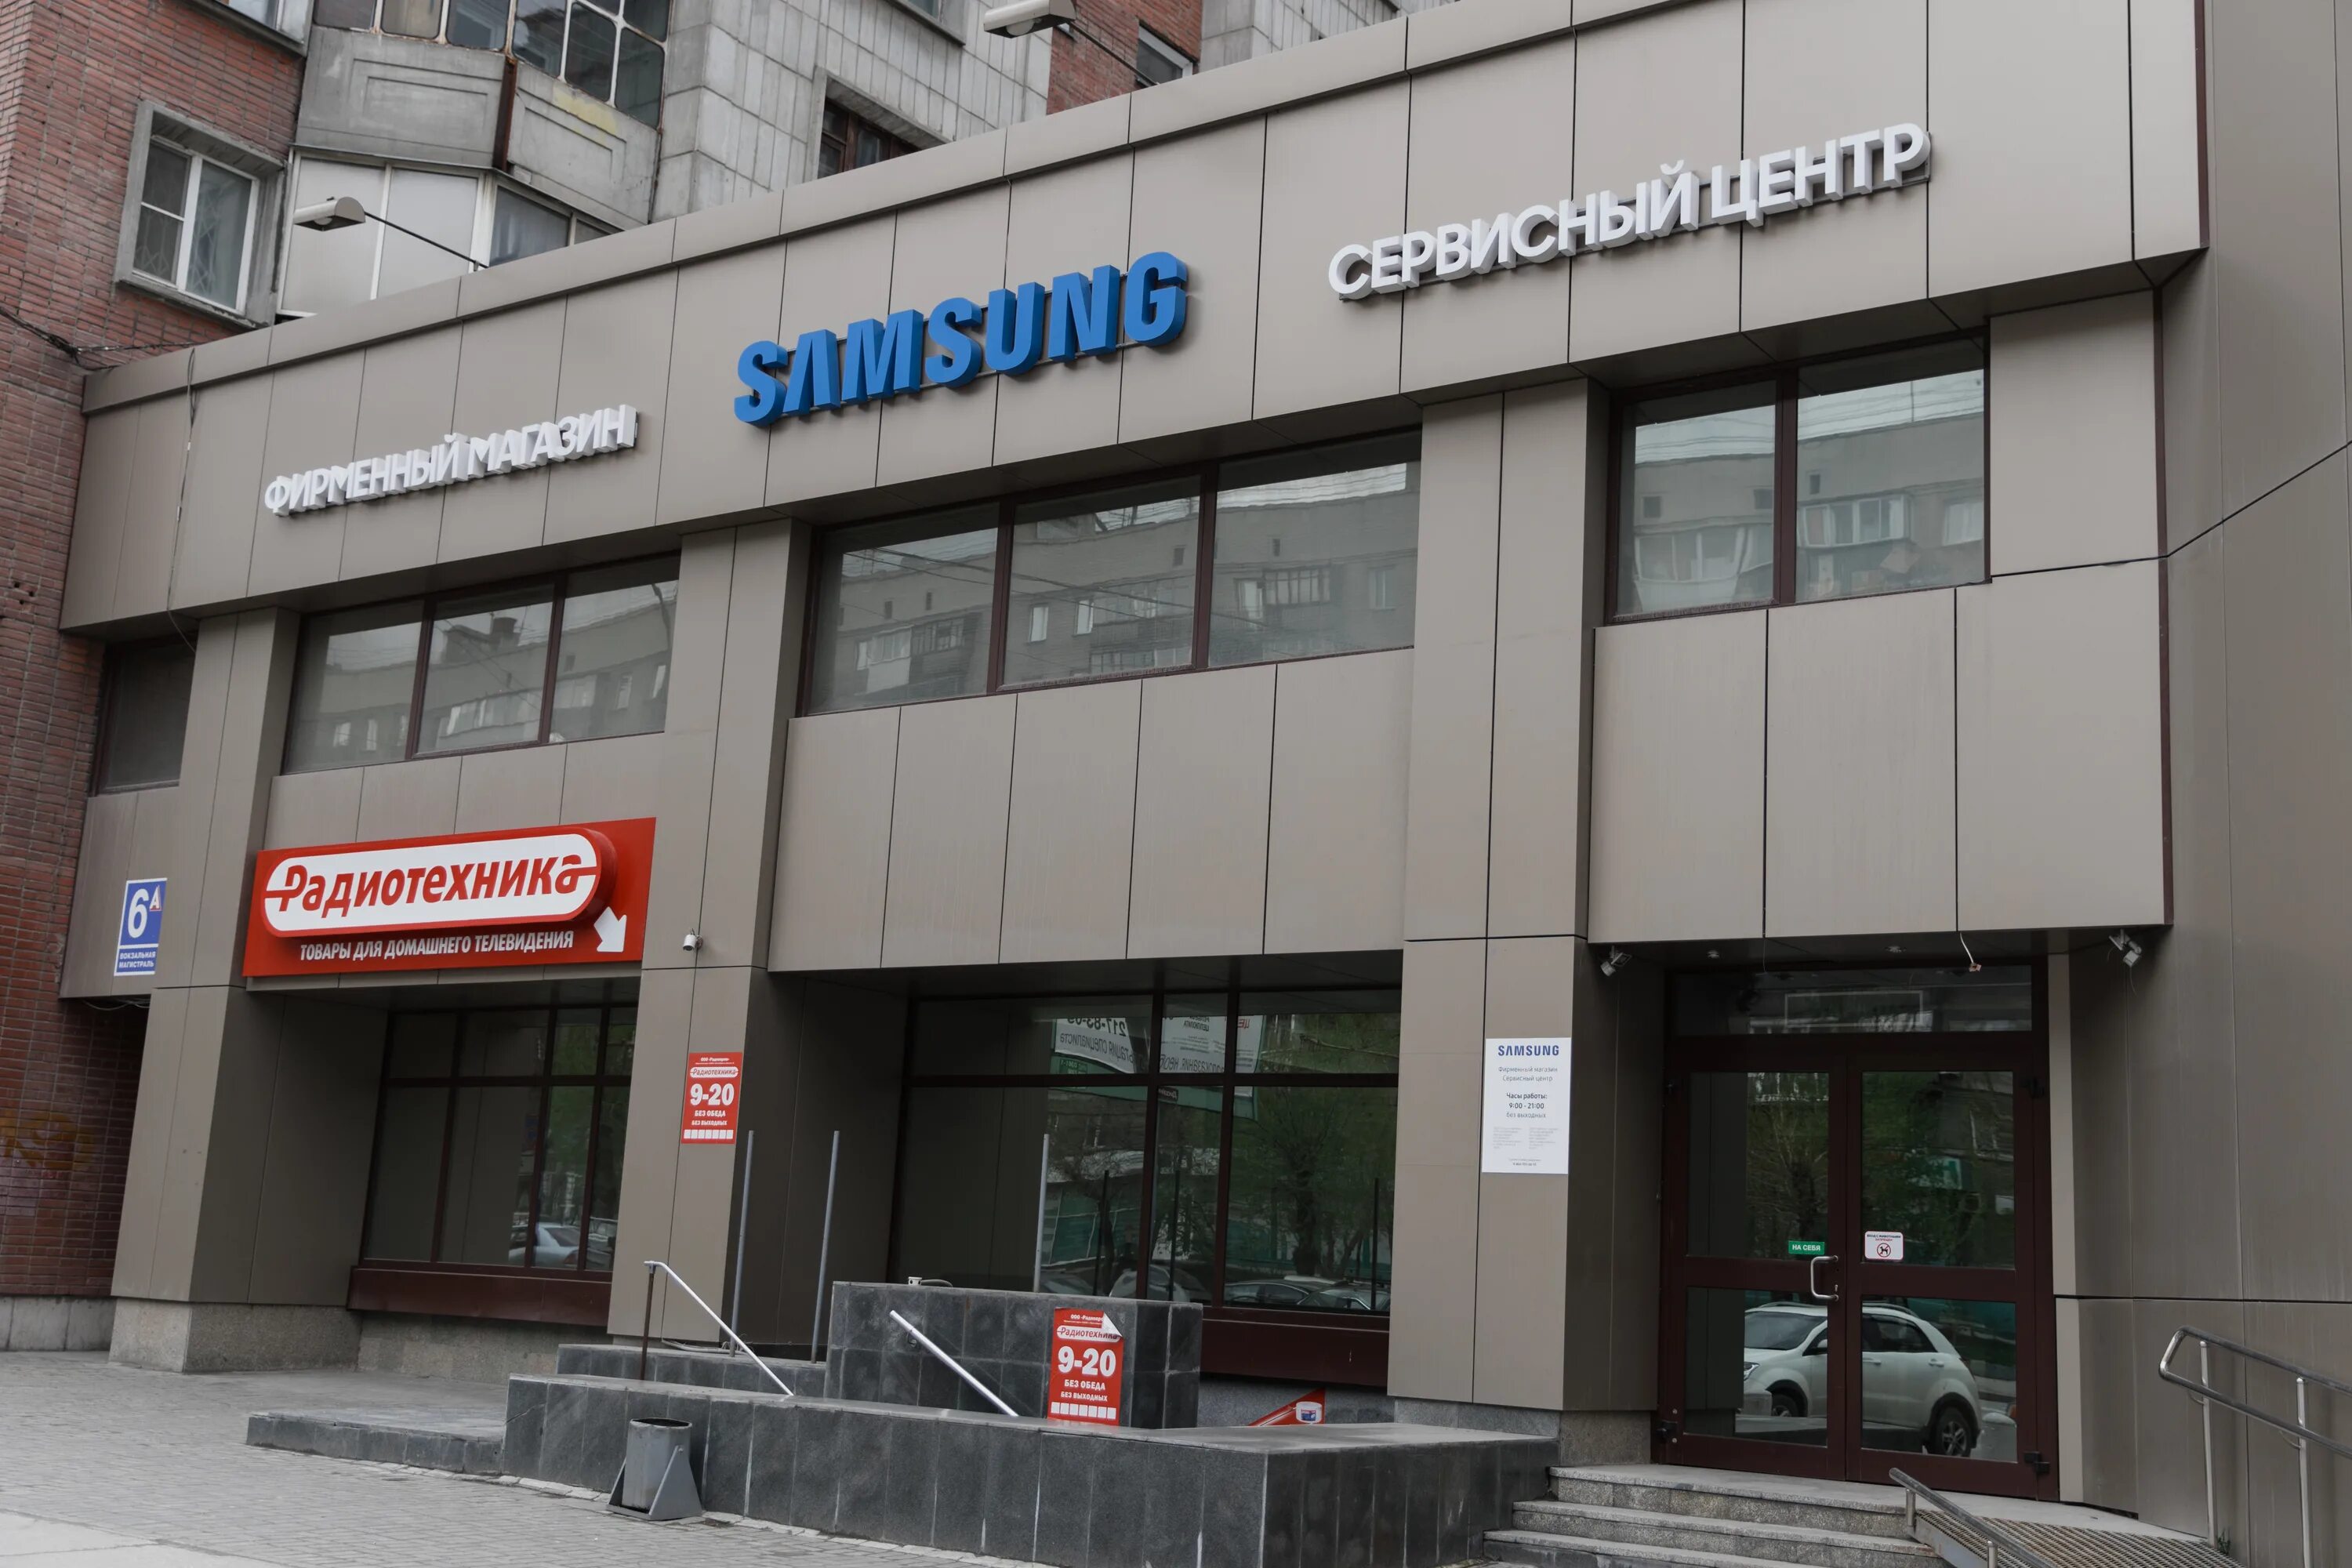 Сервисный центр вокзал. Сервисный центр. Сервисный центр самсунг в Новосибирске. Samsung сервис центр. СЦ Samsung.